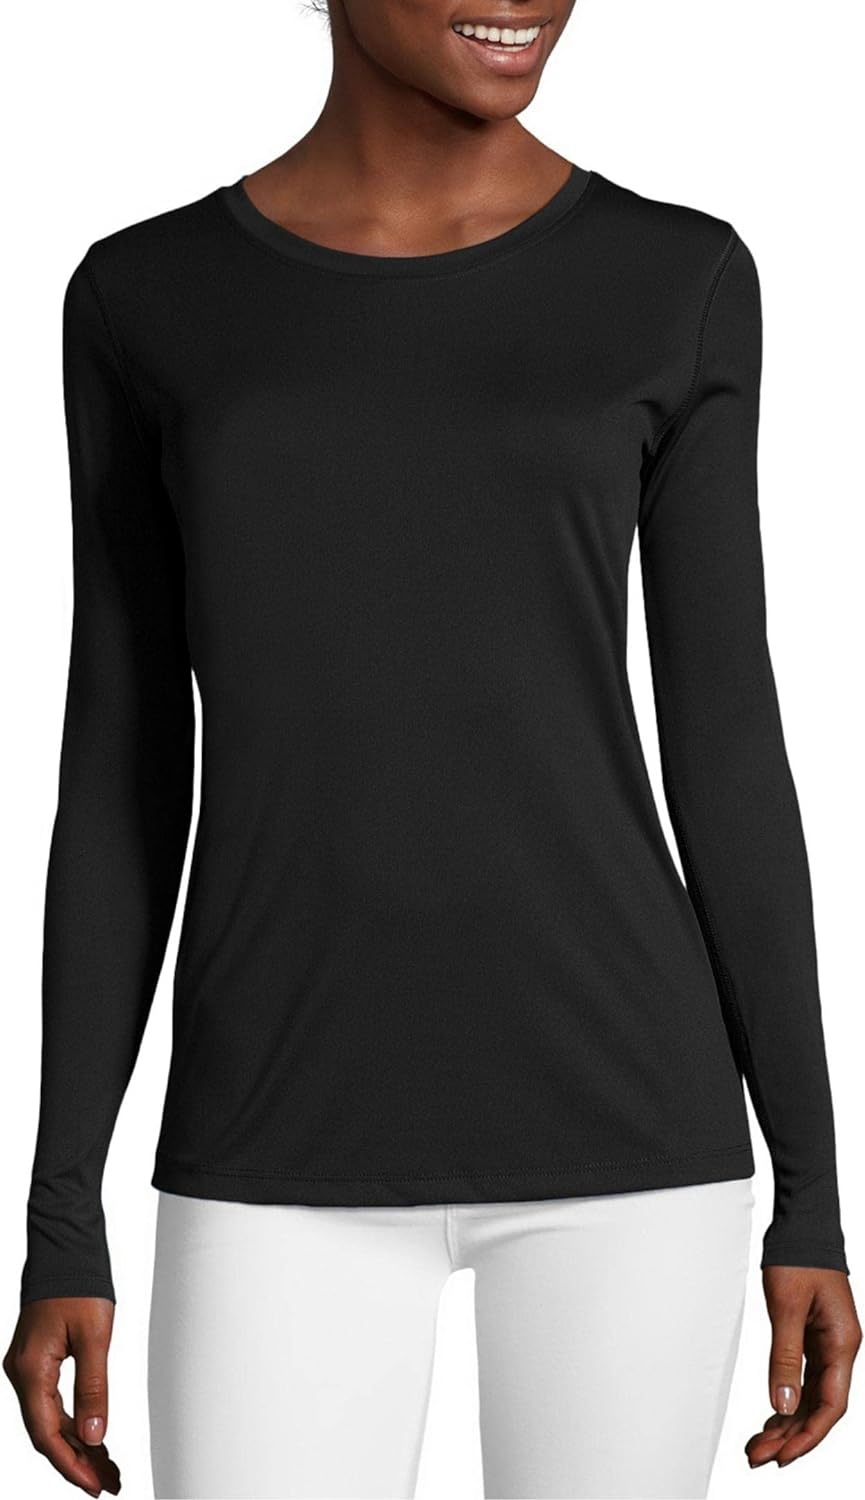 COOrun Workout Shirts for Women Long Sleeve Yoga Tops Casual